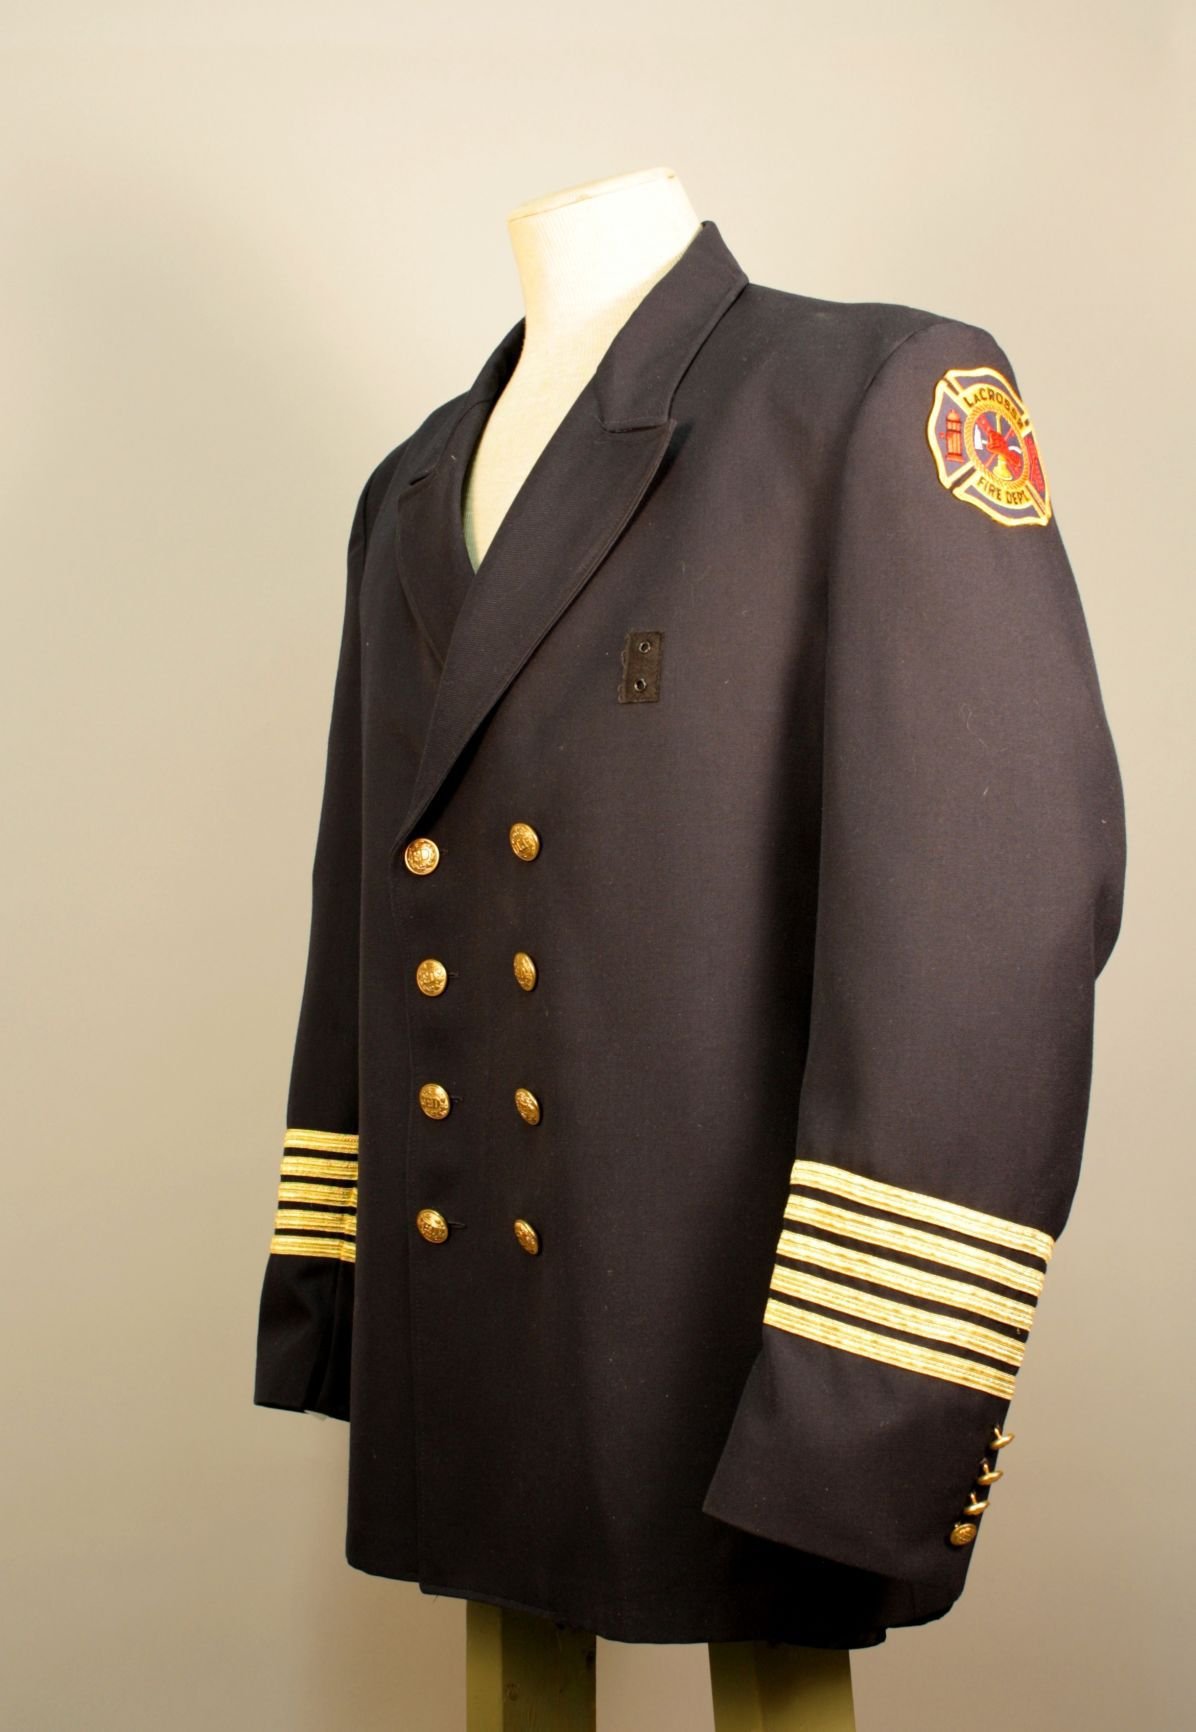 qm uniforms.com